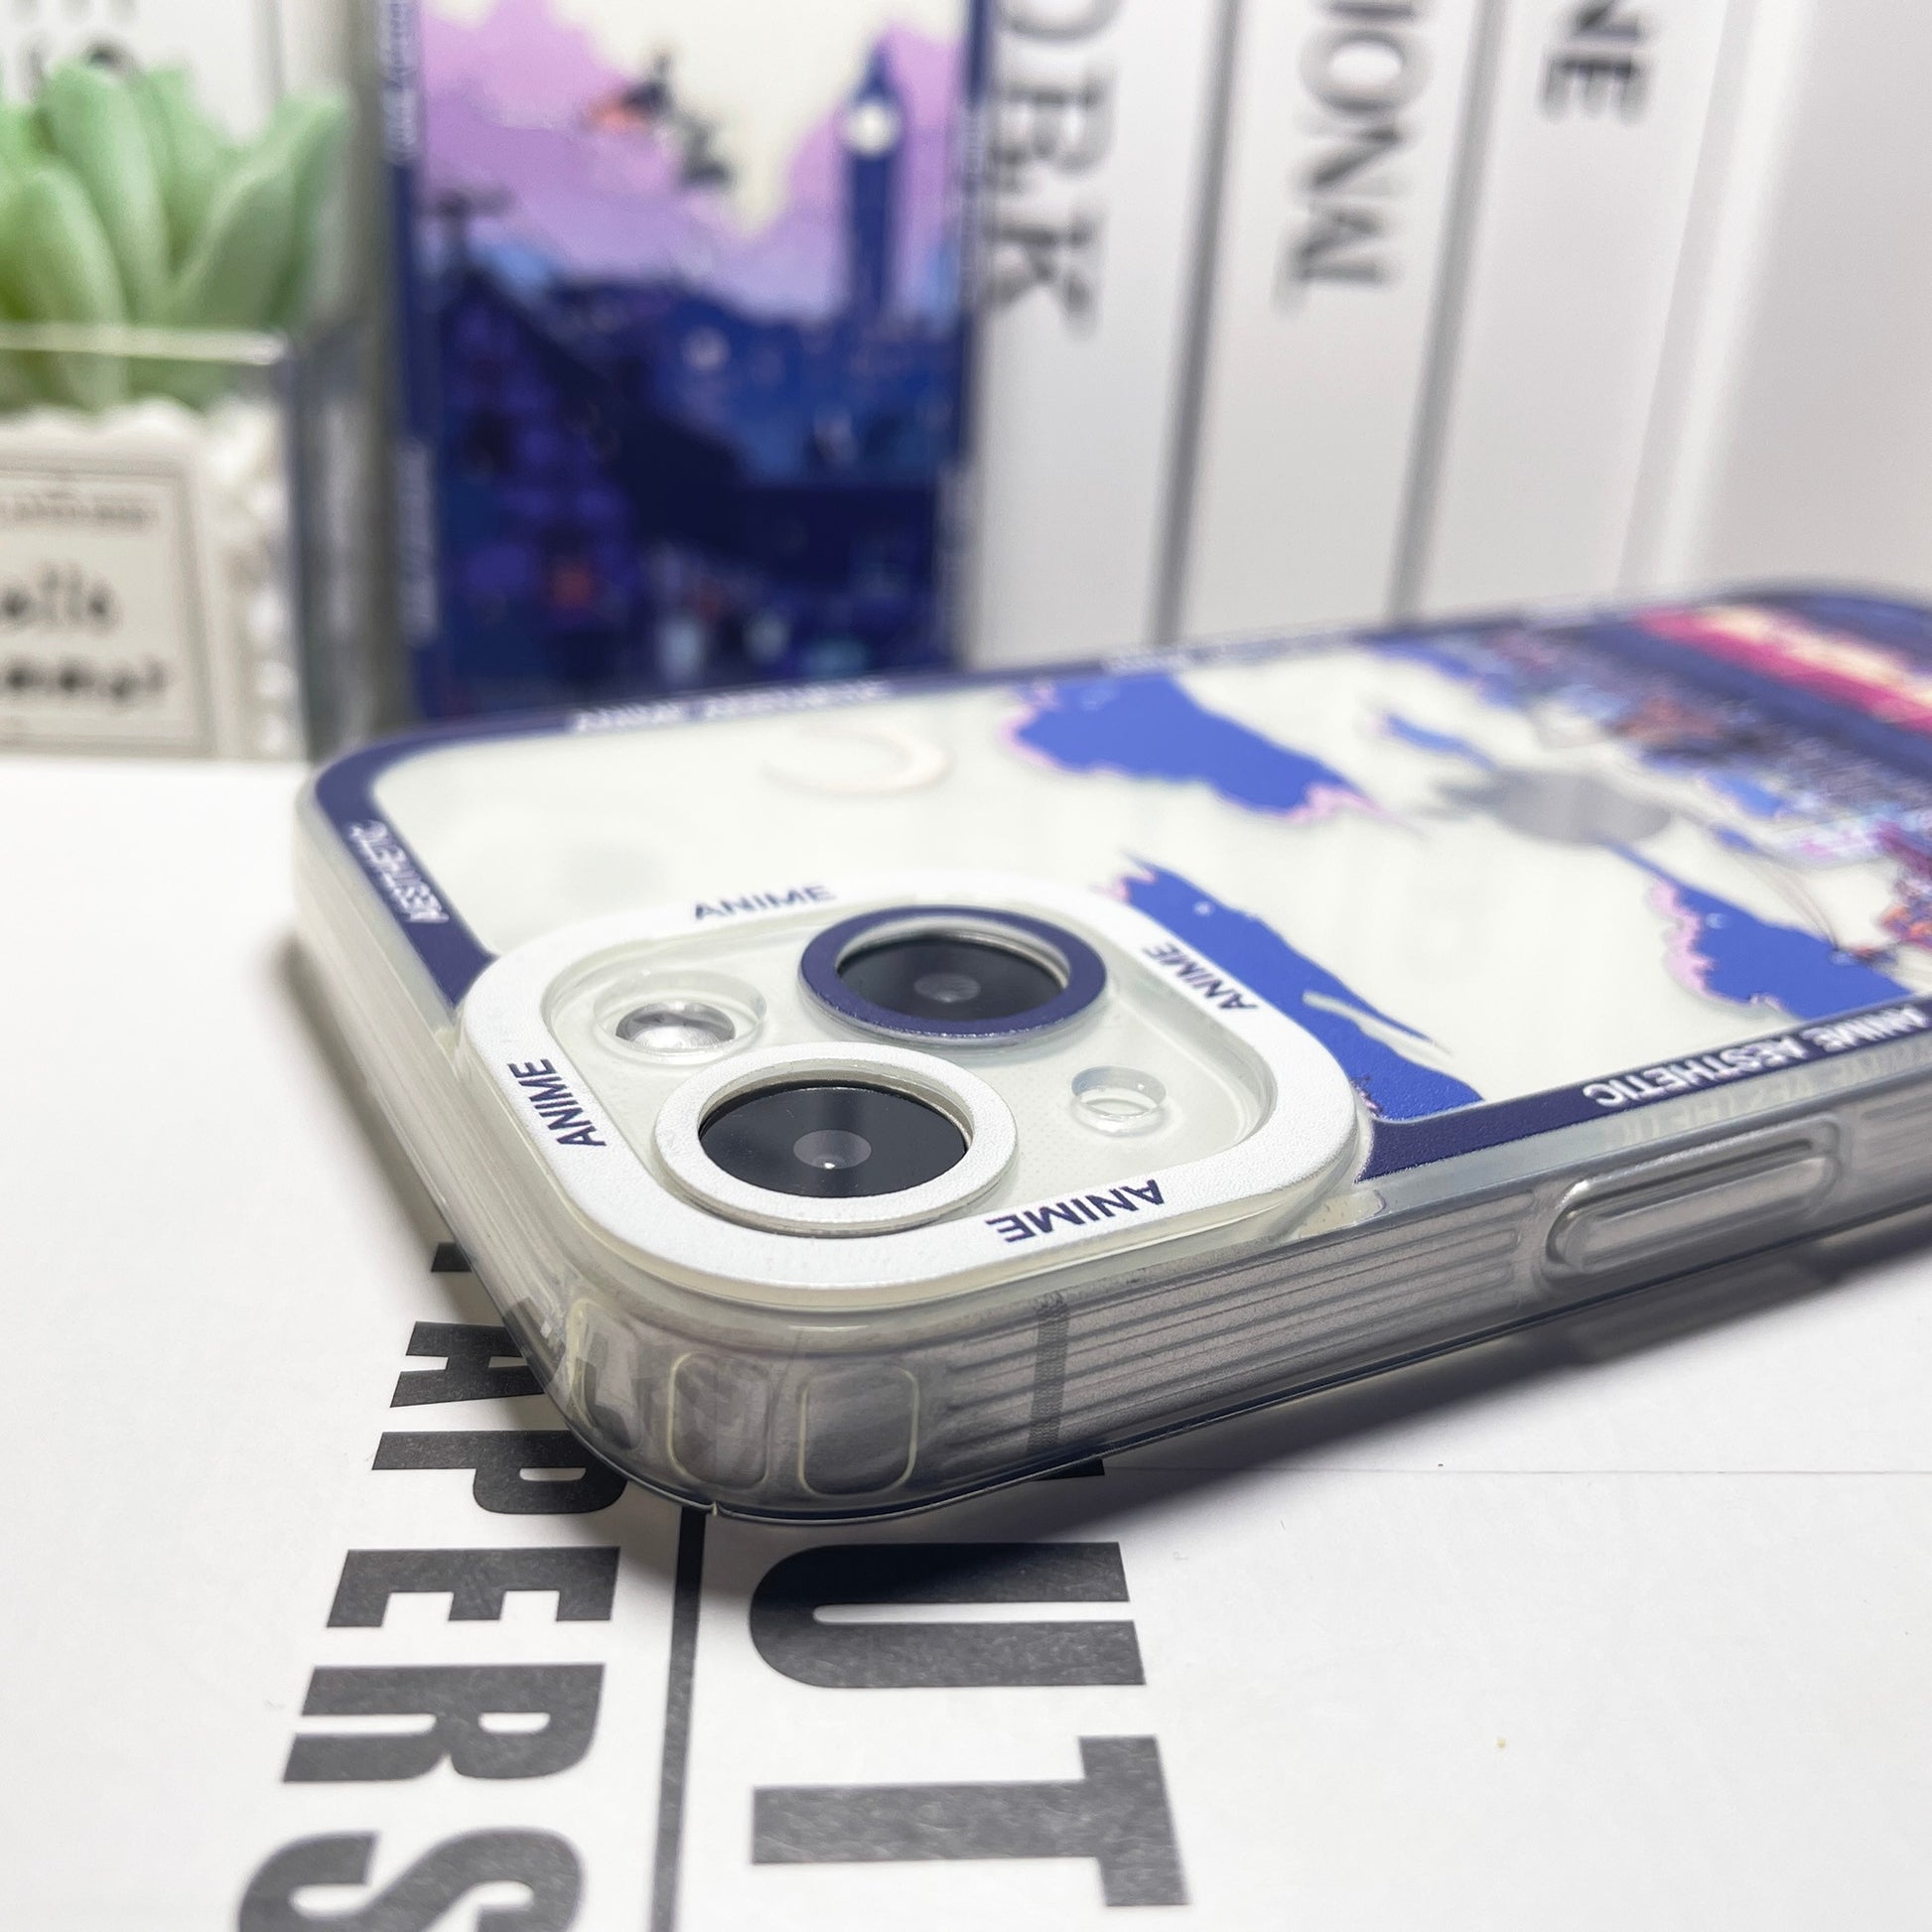 SHIGATSU WA KIMI NO USO KAORI ANIME iPhone 12 Pro Max Case